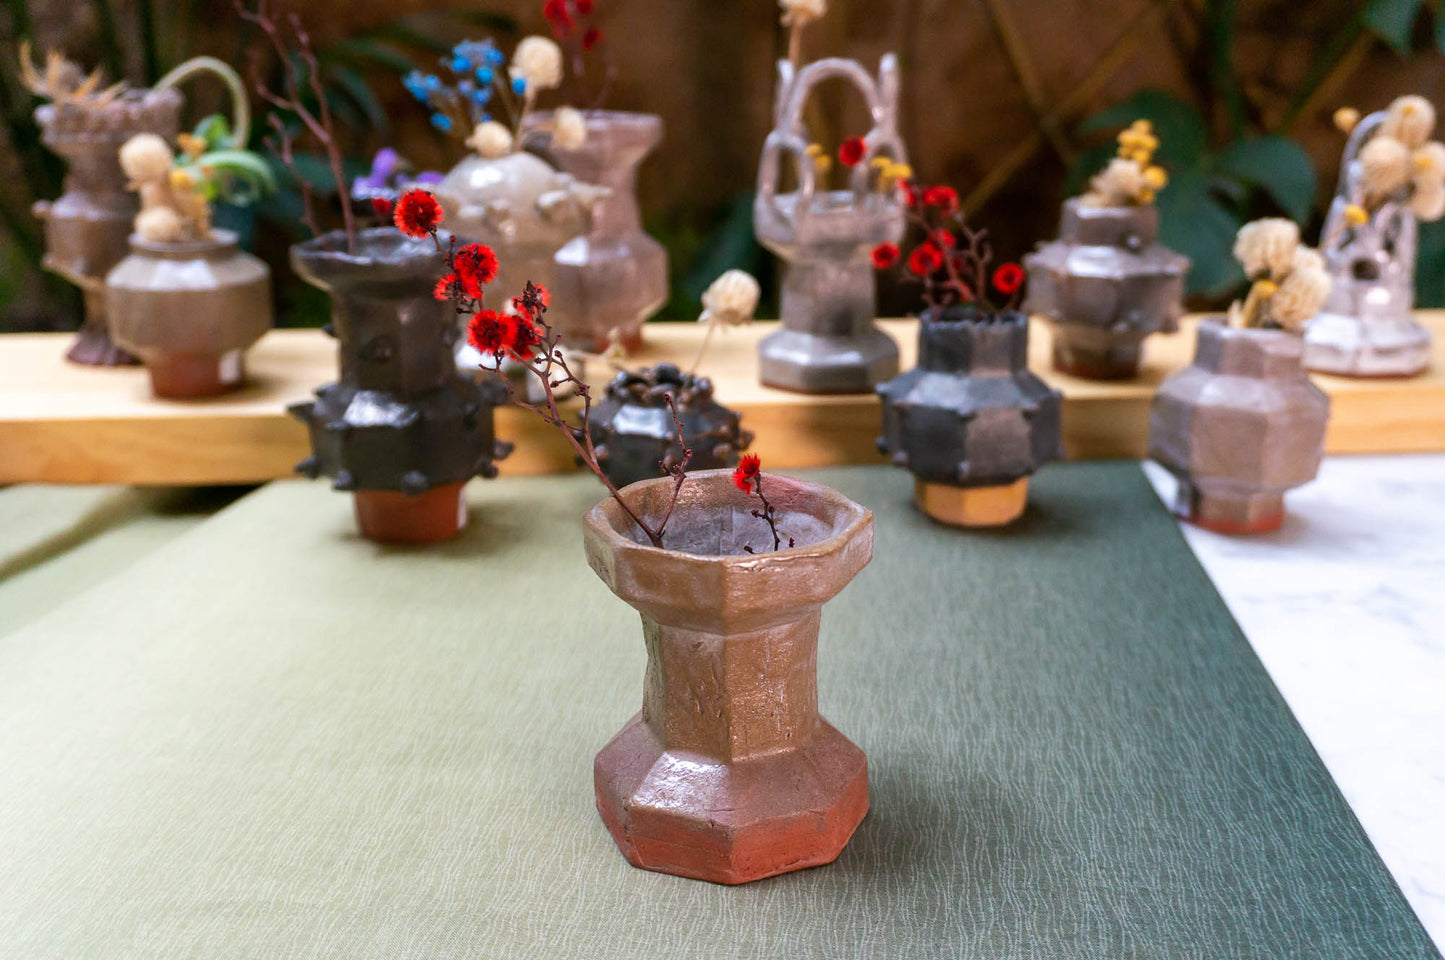 Minimalist Vase | Modern Vases | Small Ceramic Vase (v-217)